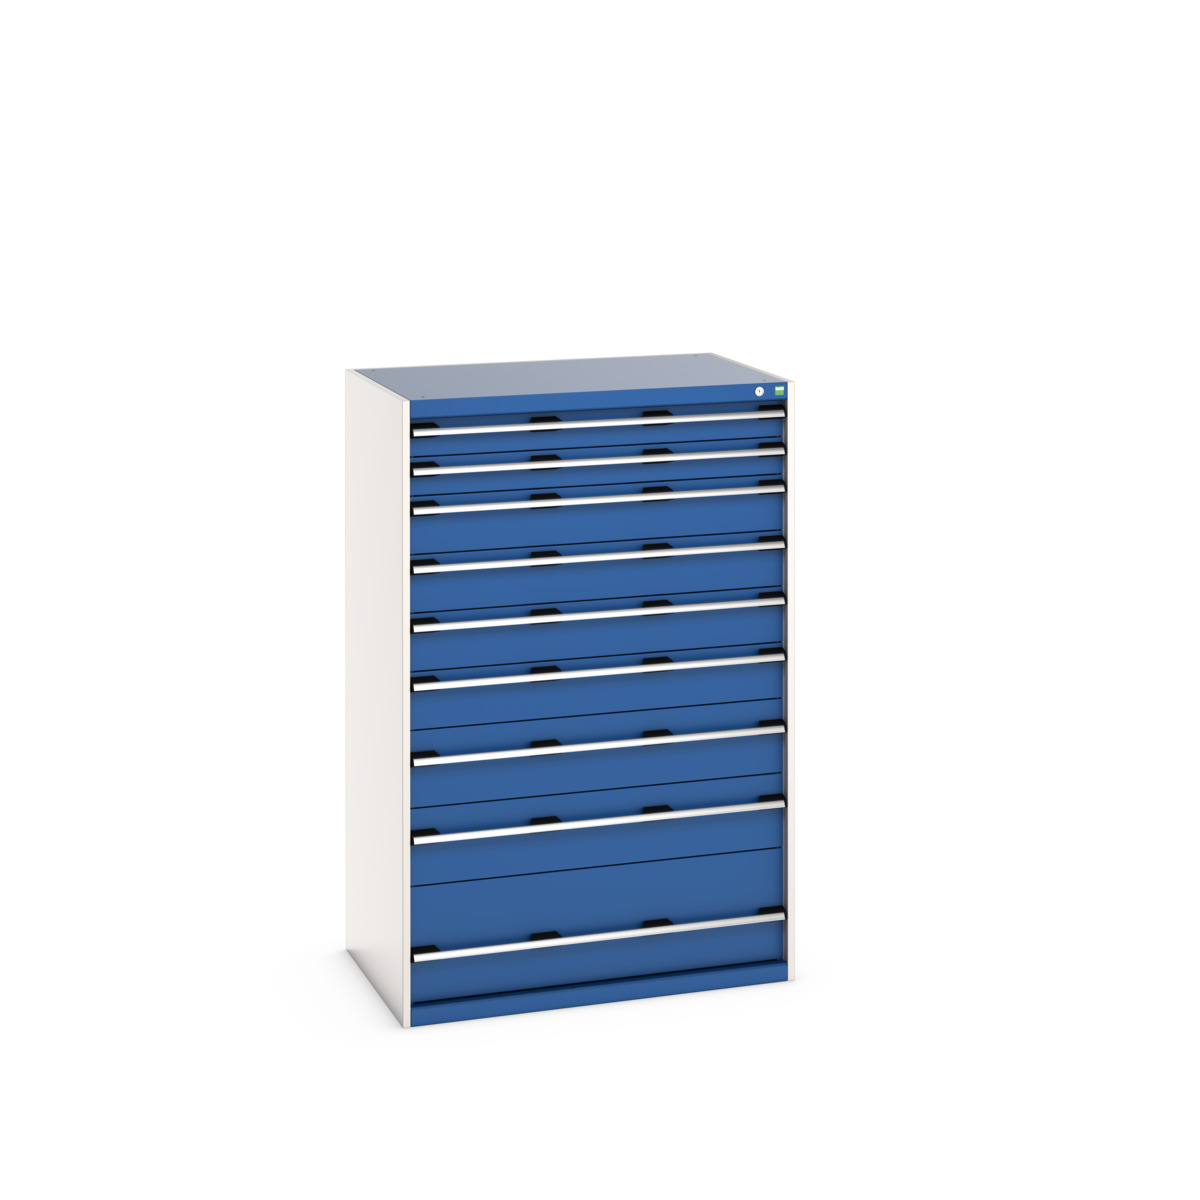 40029035.11V - cubio drawer cabinet